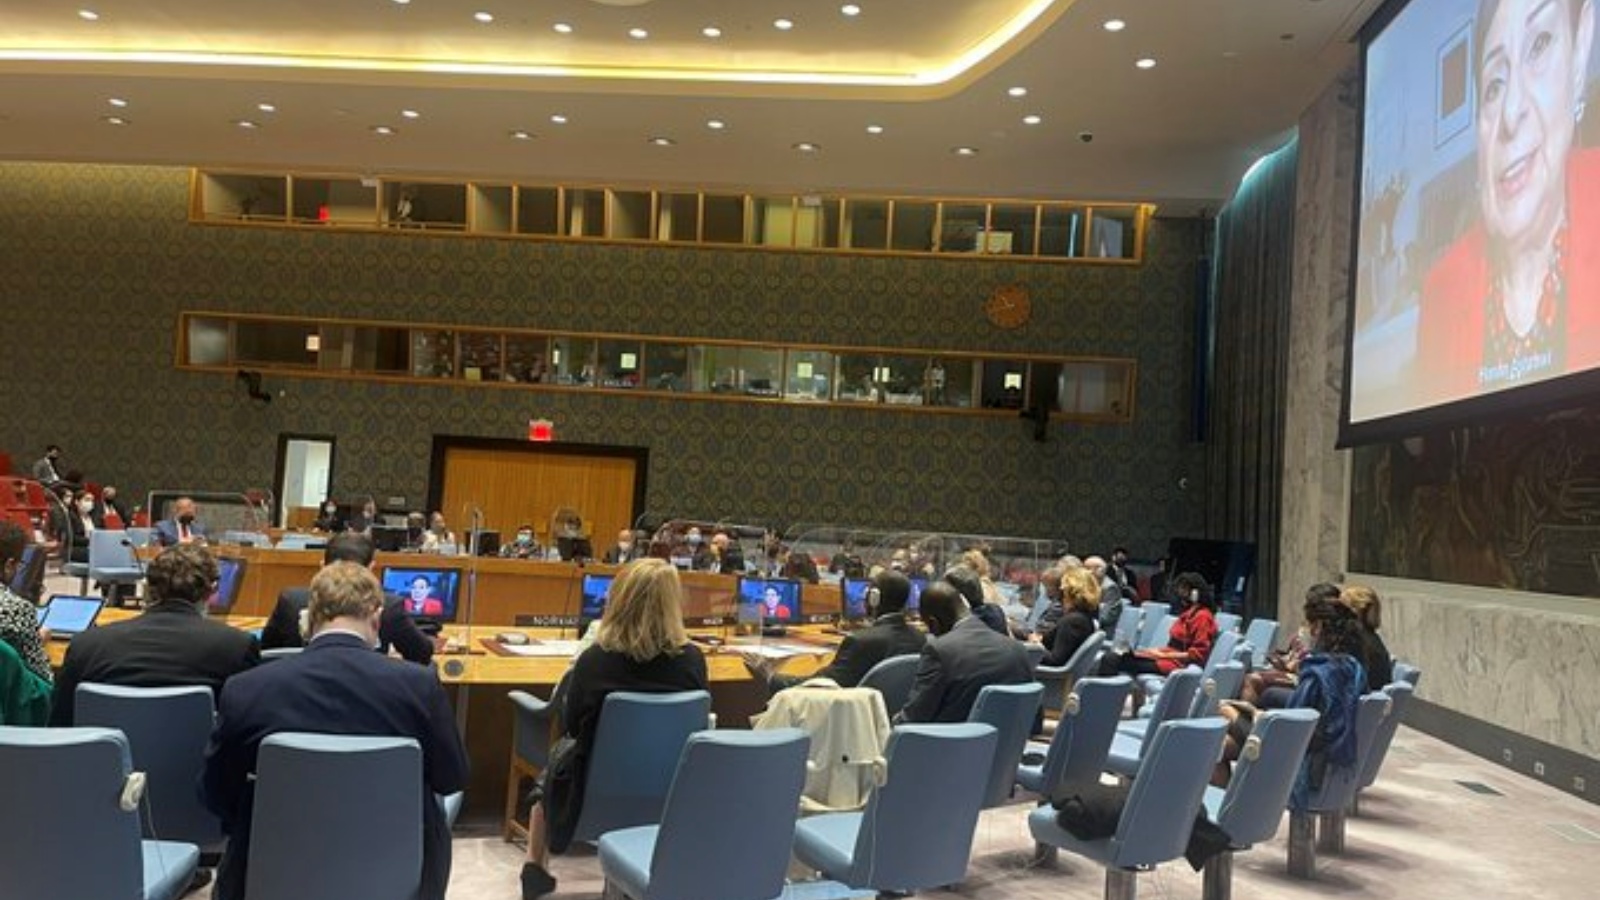 اجتماع لأعضاء مجلس الأمن الدولي في صورة عن صفحة NIGER MISSION TO THE UN في تويتر.